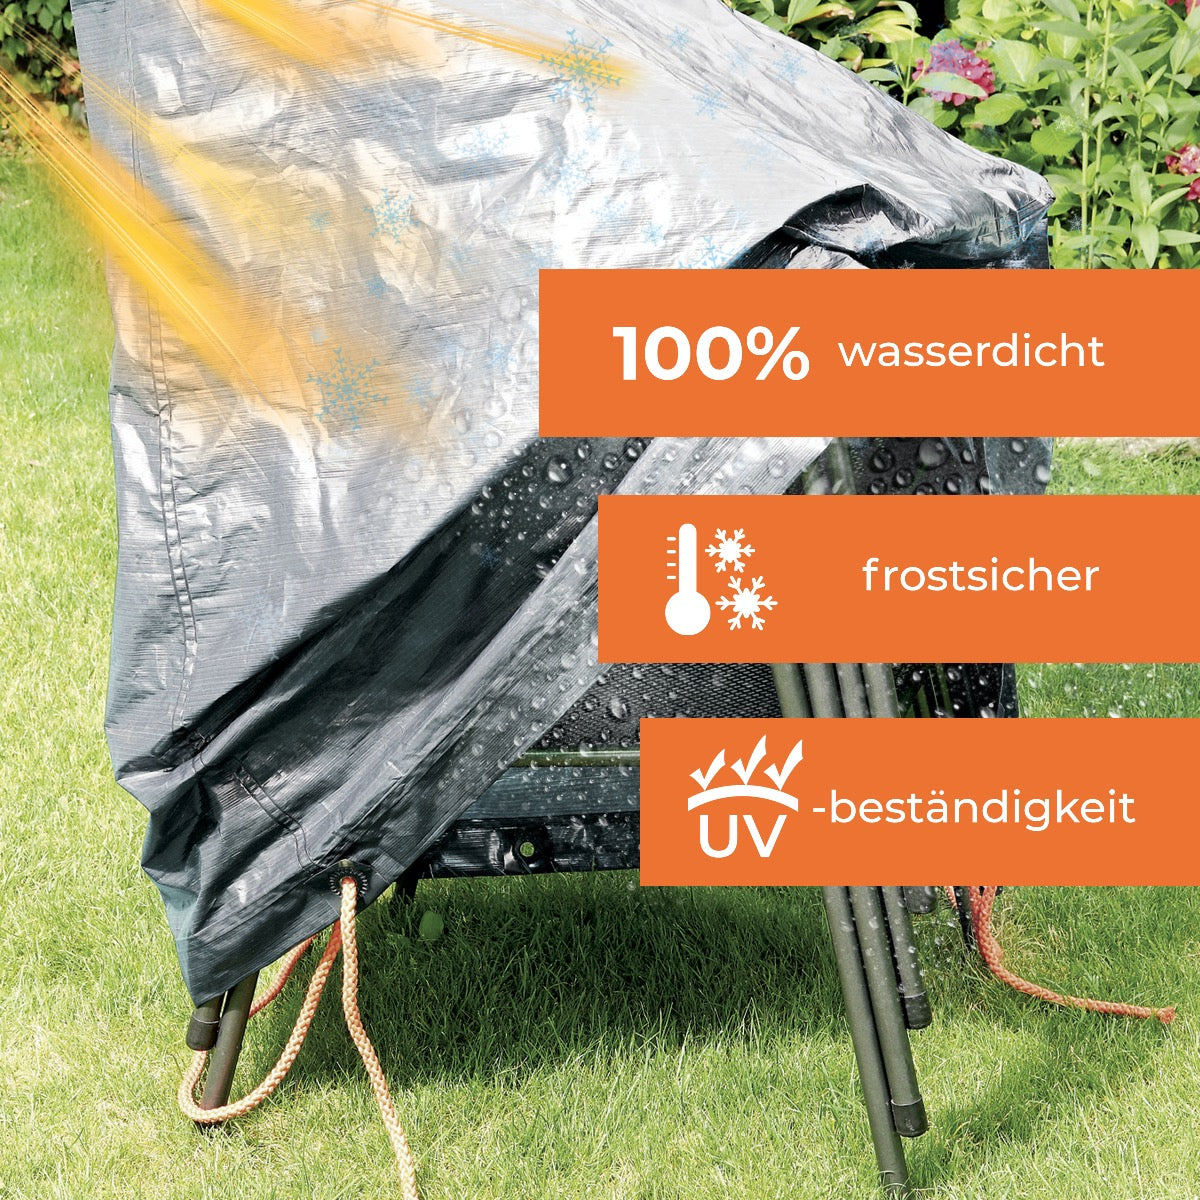 Rainexo Schutzhaube für 4 Gartenstühle - silbergrau - 100% wasserdicht, frostsicher und UV-beständig